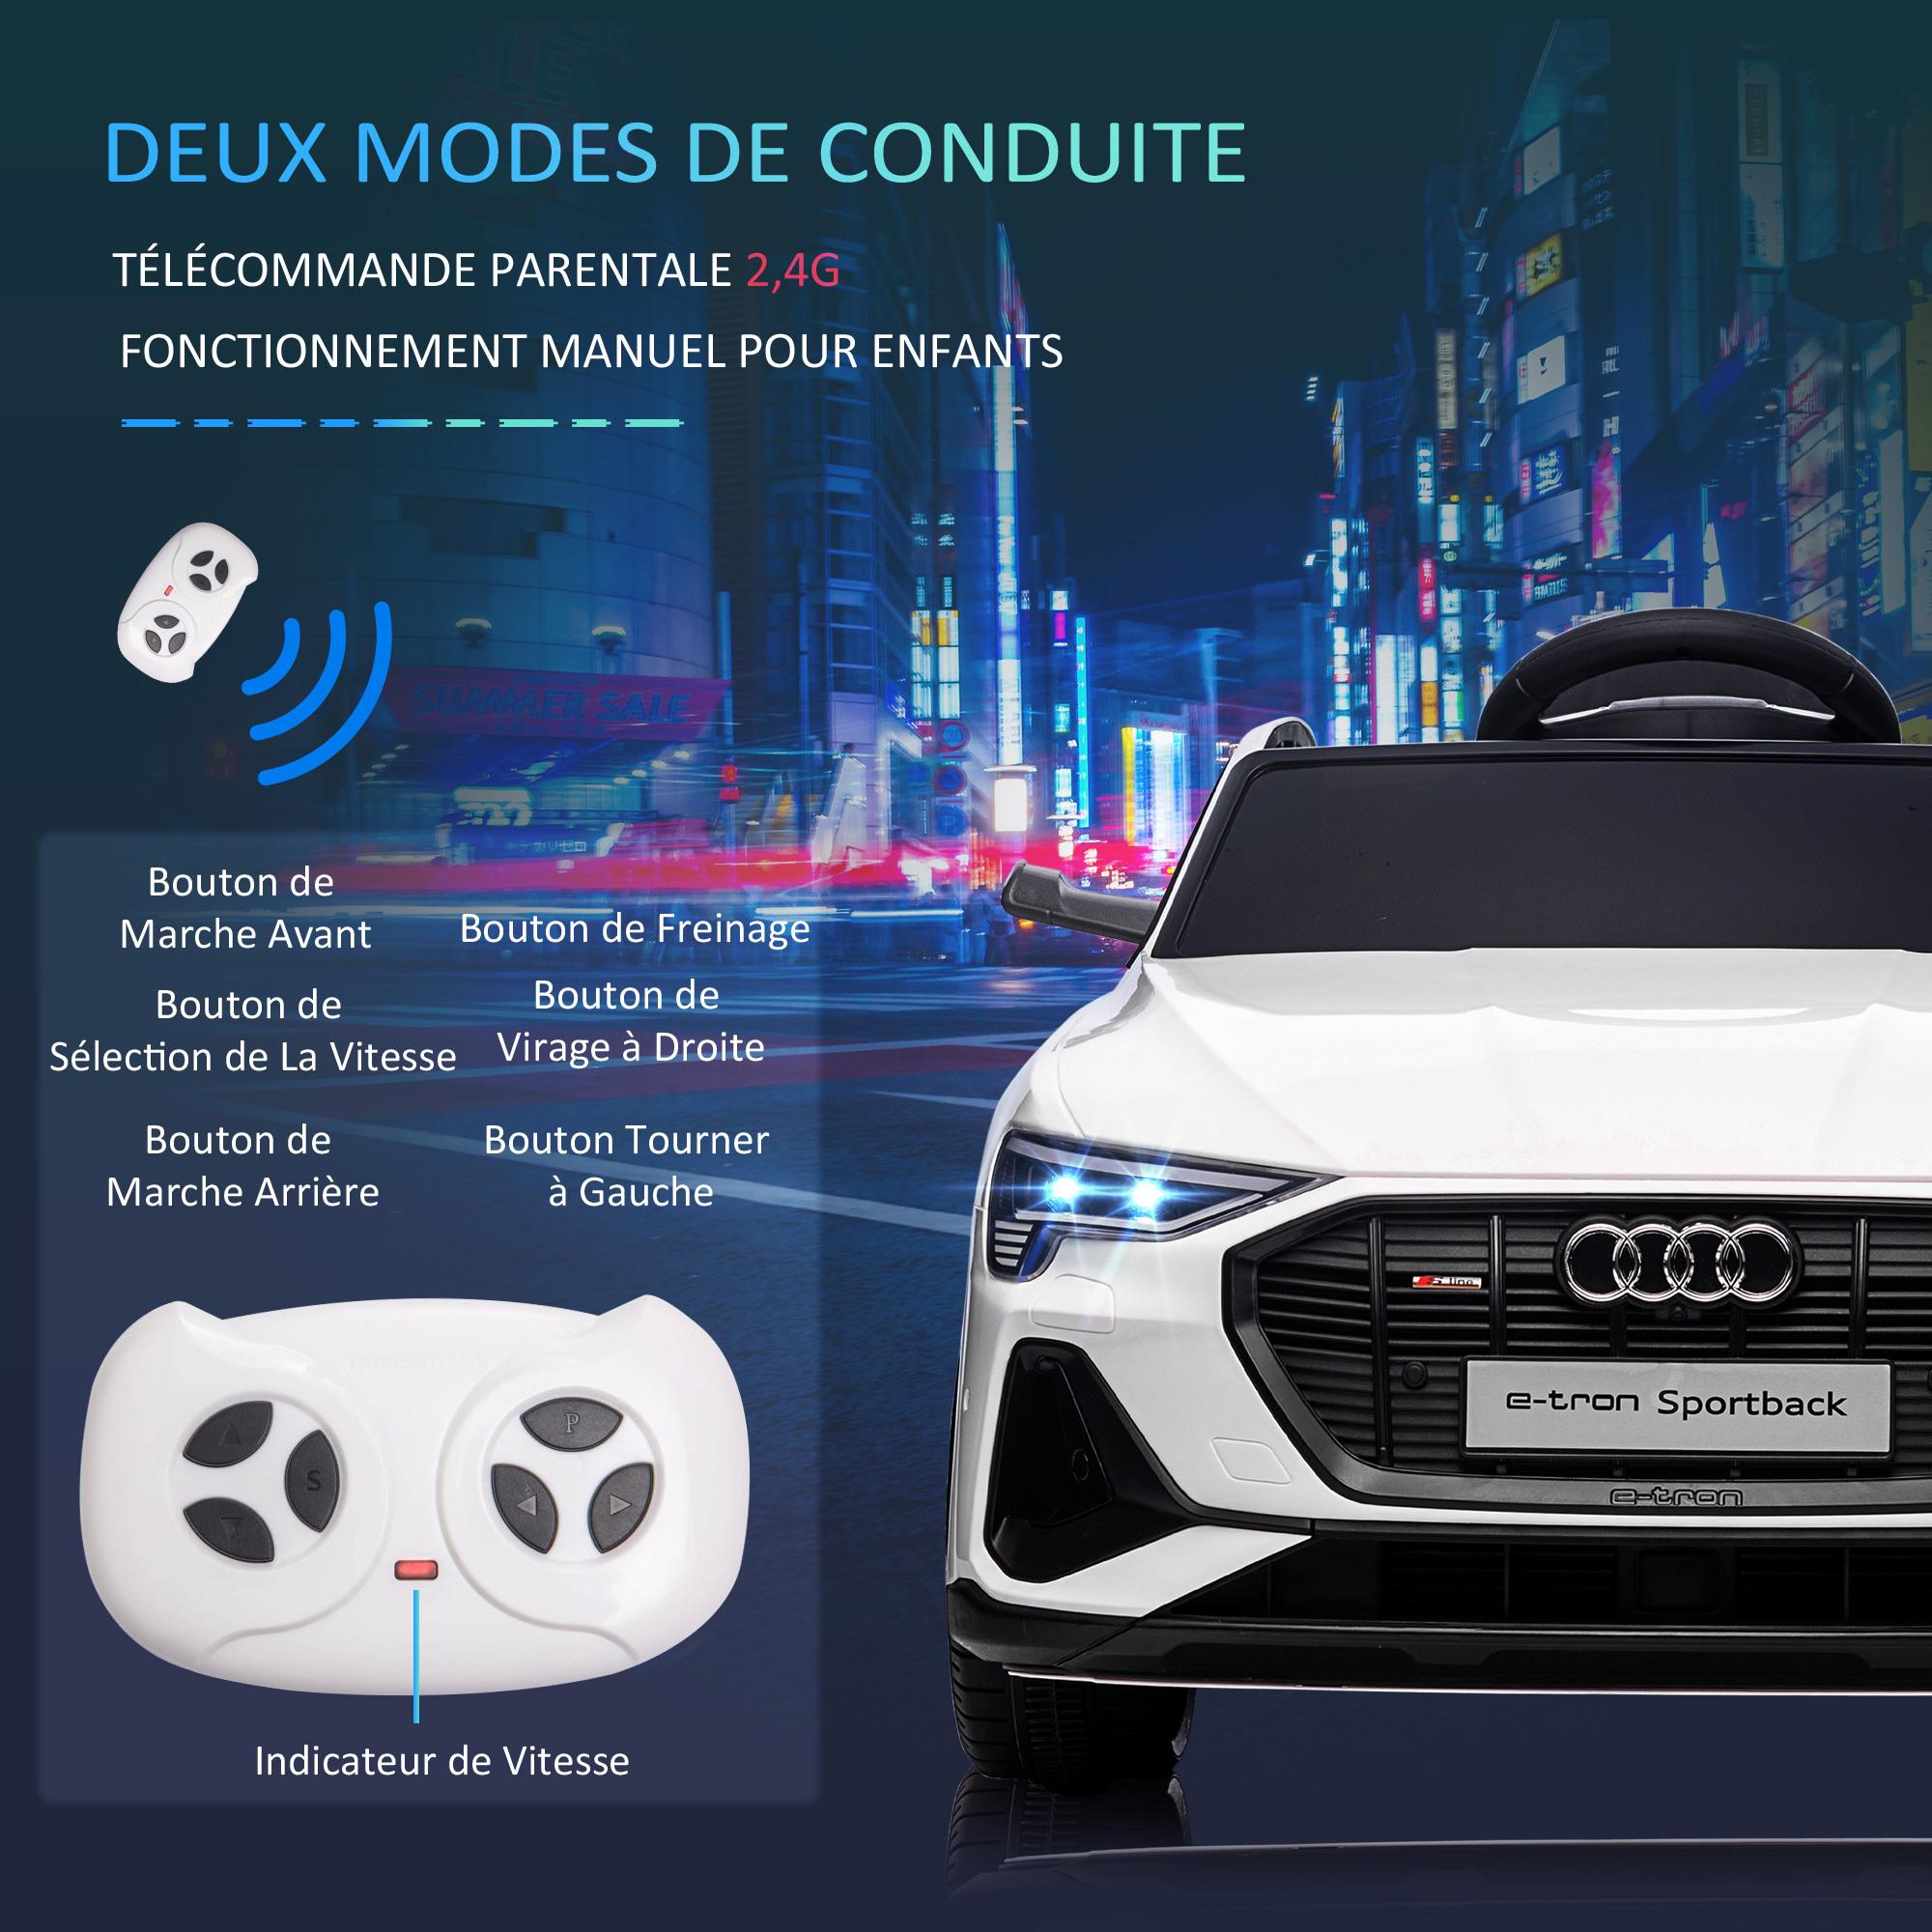 Voiture véhicule électrique enfant e-tron Sportback S line 12 V - V. max. 8 Km/h - effets sonores, lumineux - télécommande, port USB, MP3 - blanc